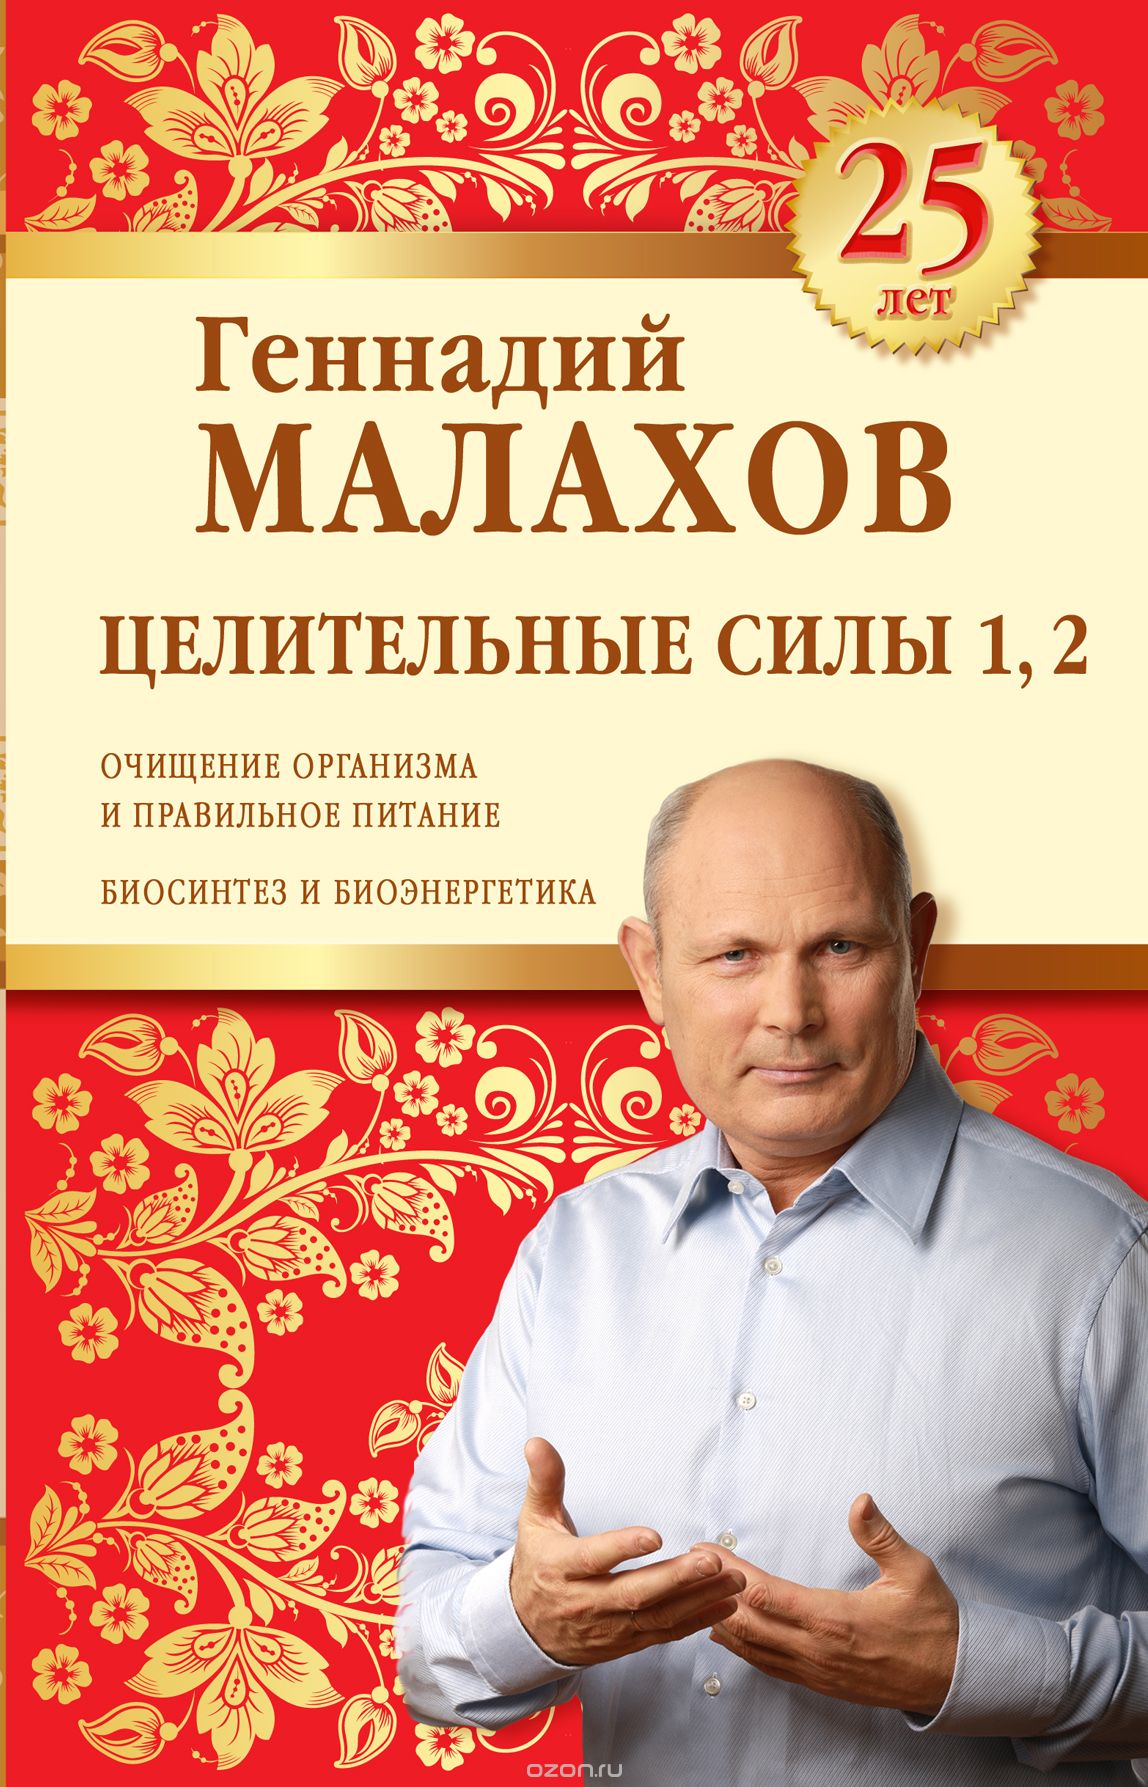 Скачать книгу "Целительные силы 1, 2. Юбилейное издание, Геннадий Малахов"